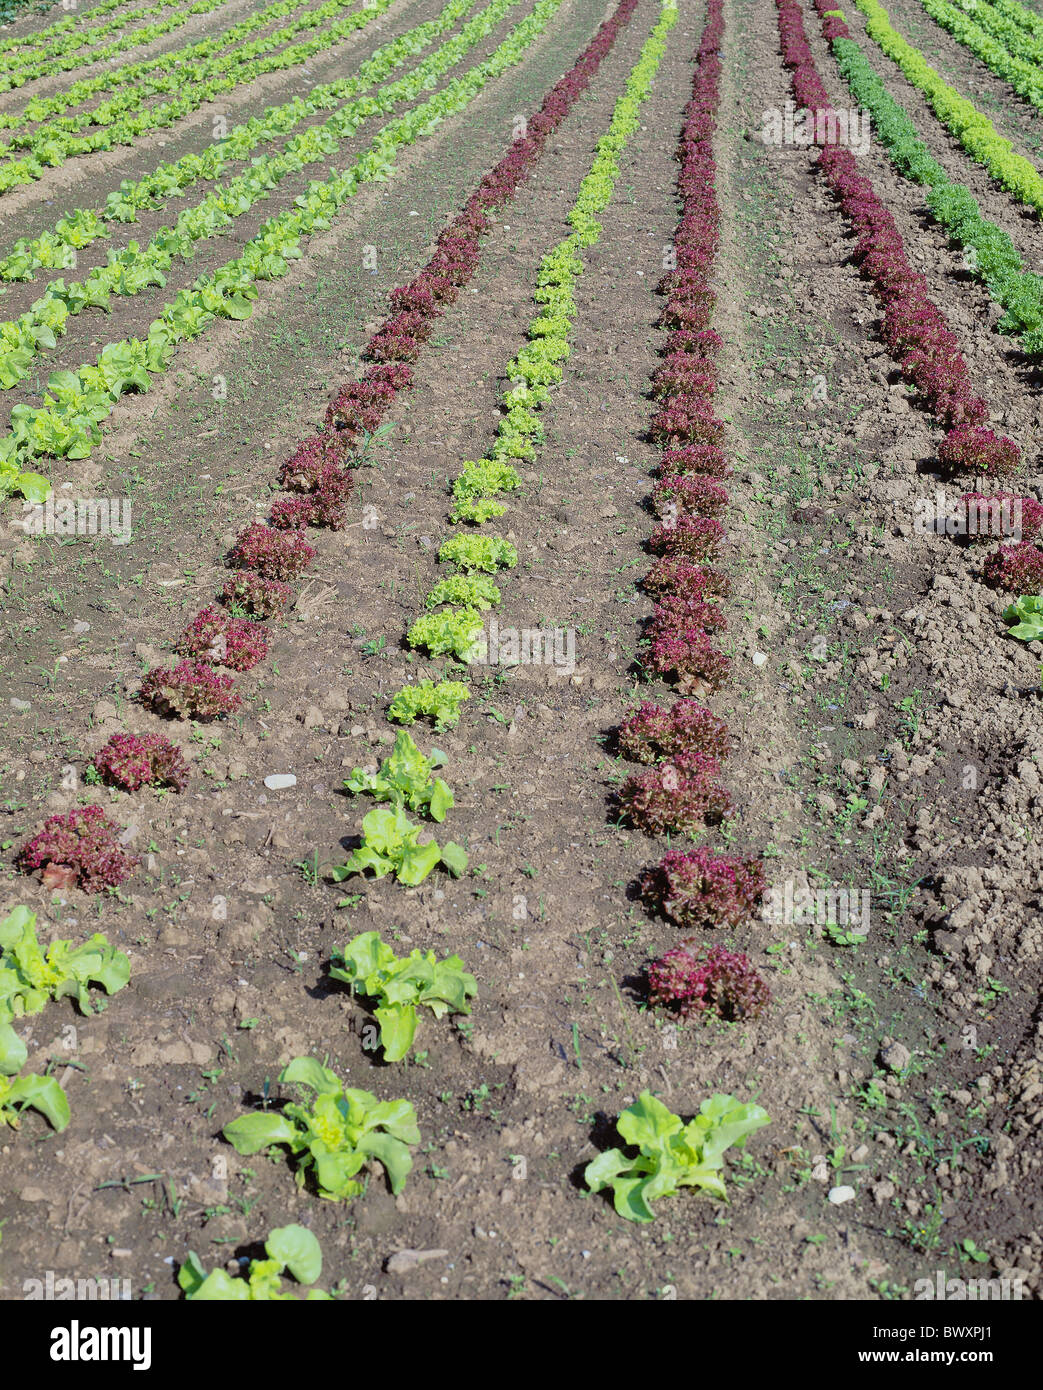 Salade de légumes vert rouge laitue semis Lignes de champ sommaire partie coupe l'agriculture Food food eati Banque D'Images